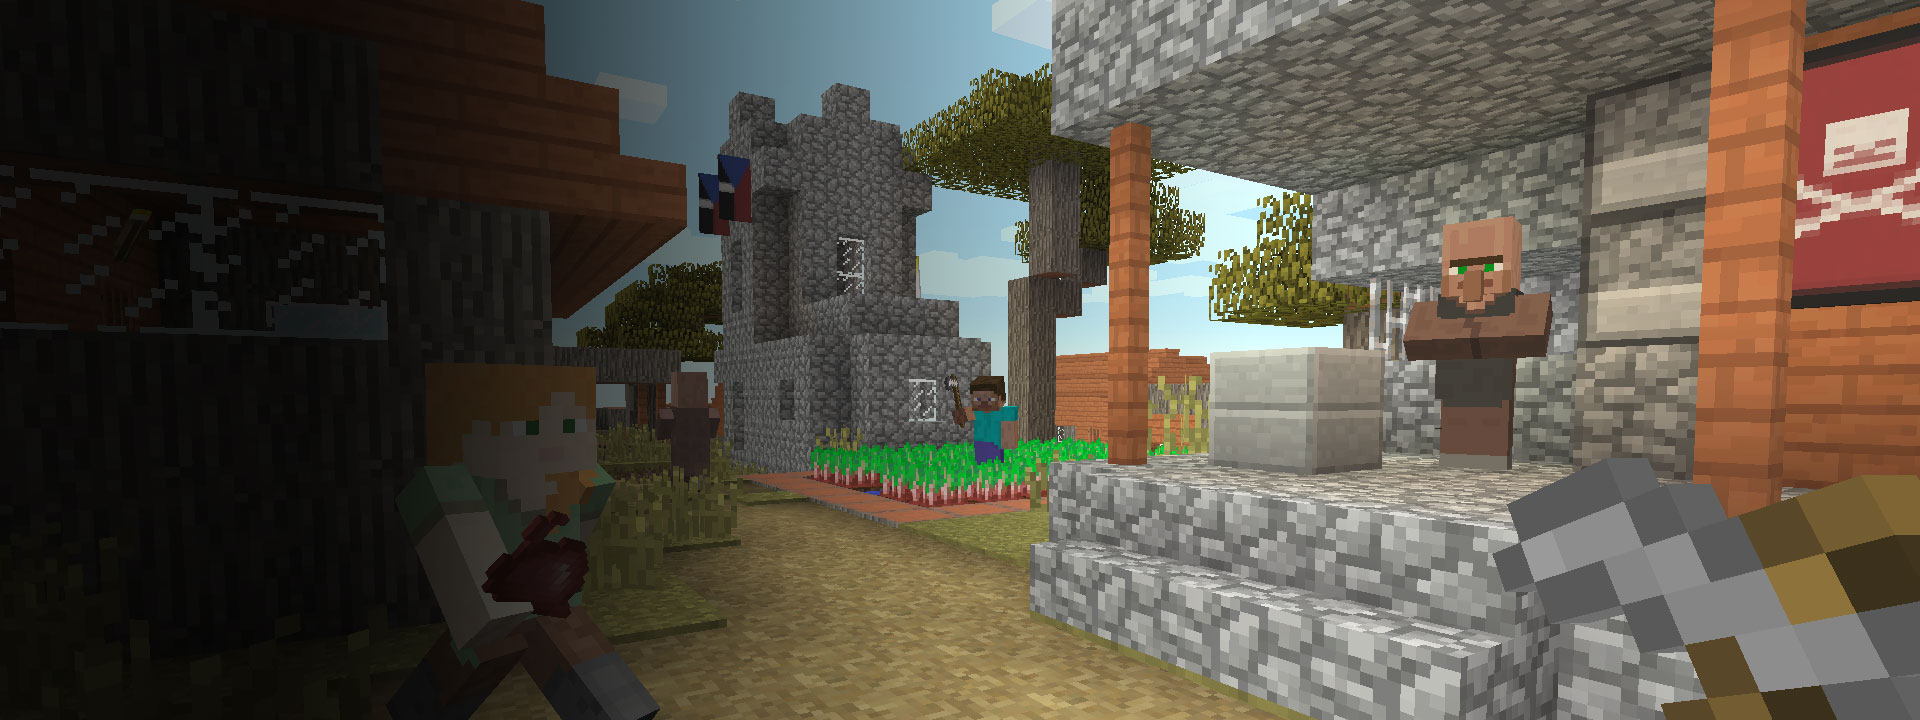 Varias casas y personajes de Minecraft que caminan en primer plano.